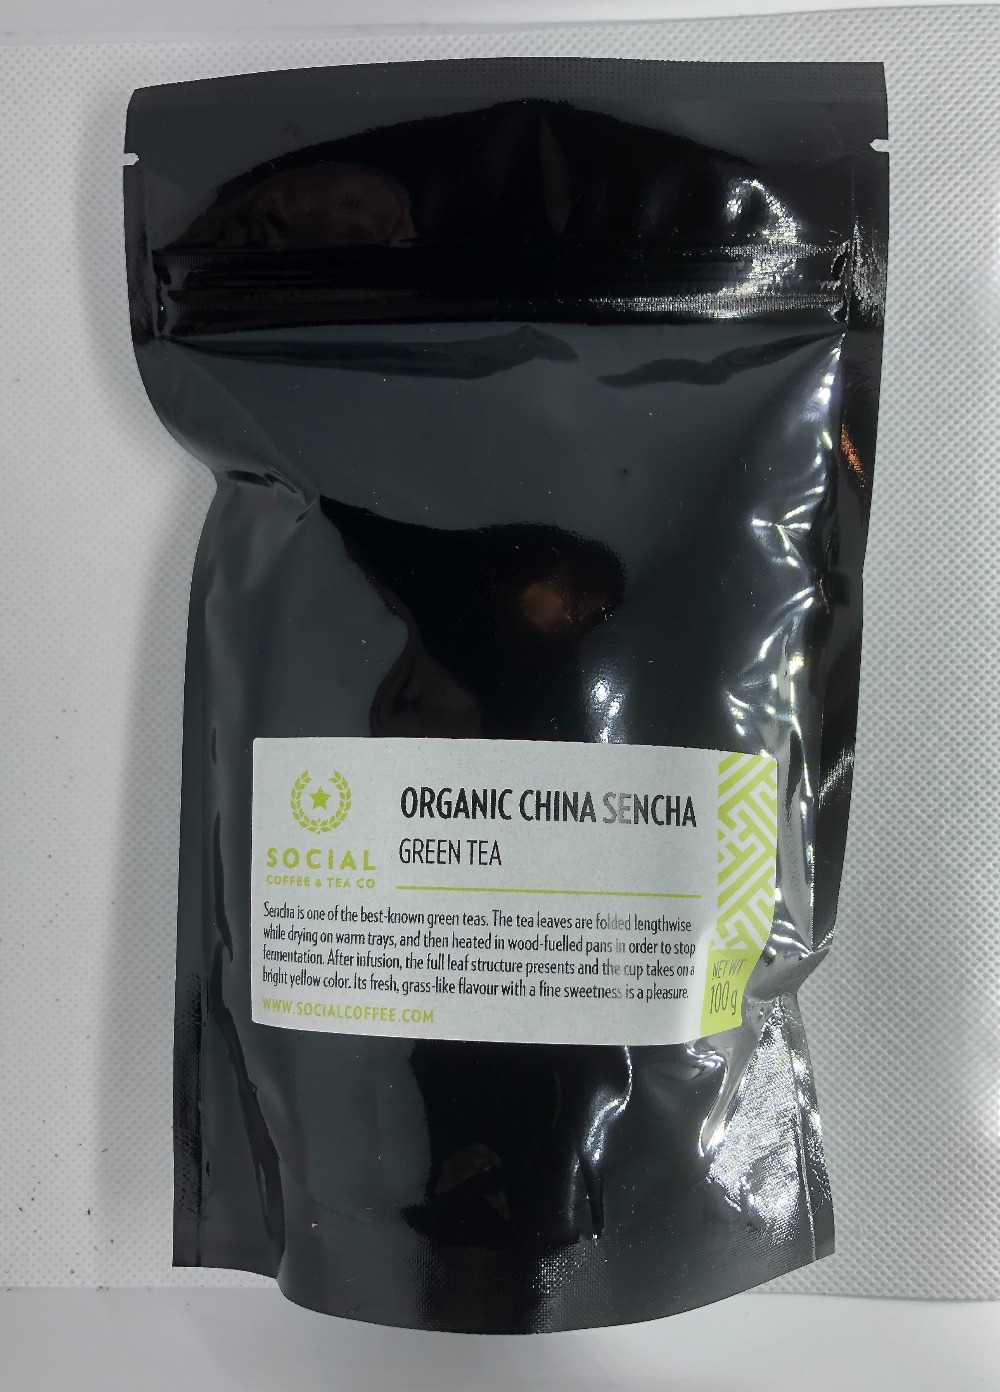 Organic China Sencha Green Tea by Social Coffee & Tea Company